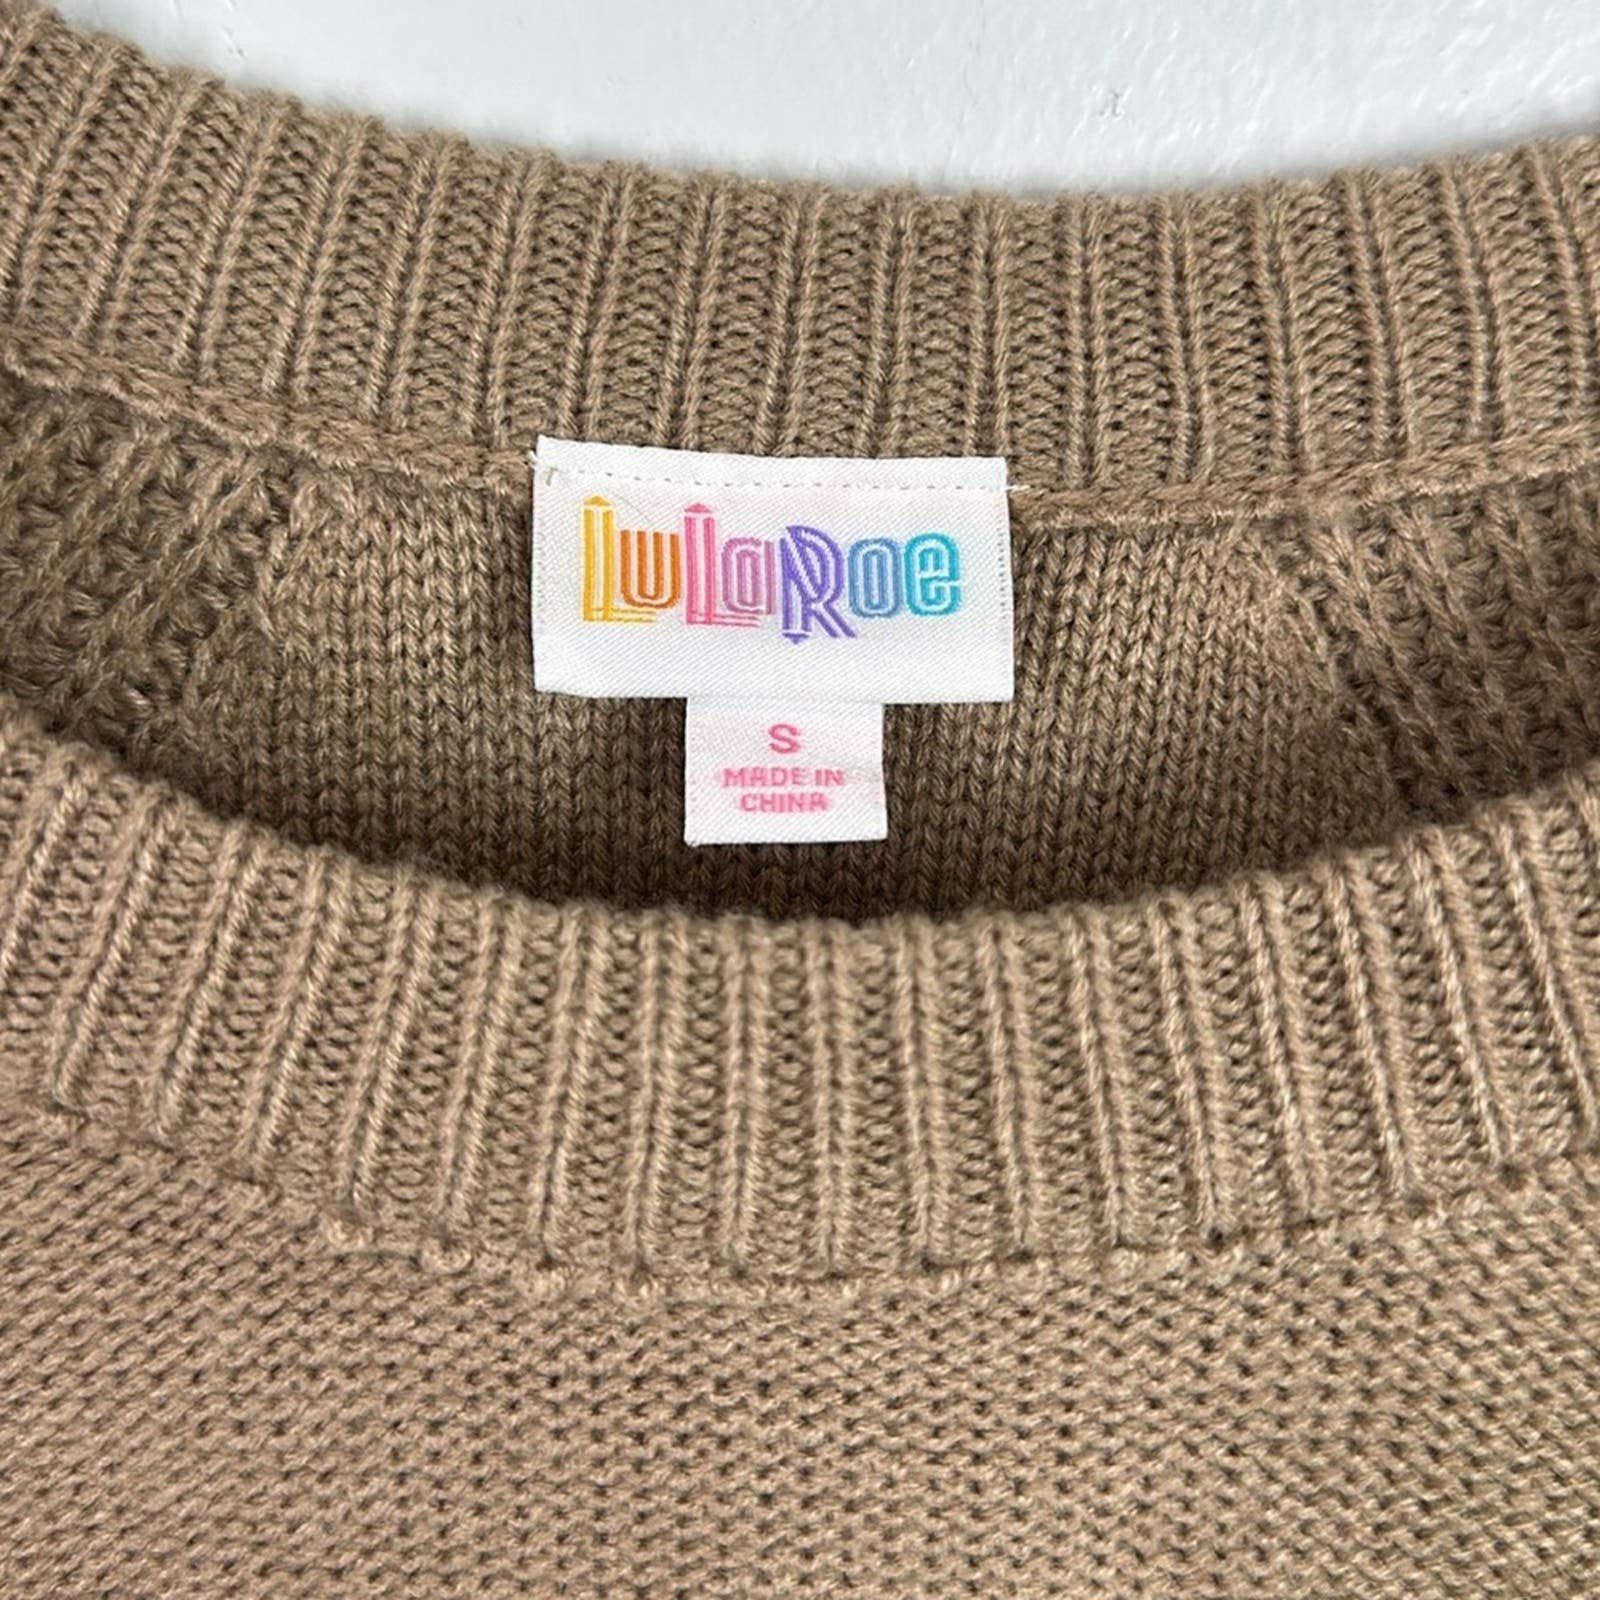 high discount Lularoe Lauren tan sweater dress size small g08JjRAdz outlet online shop